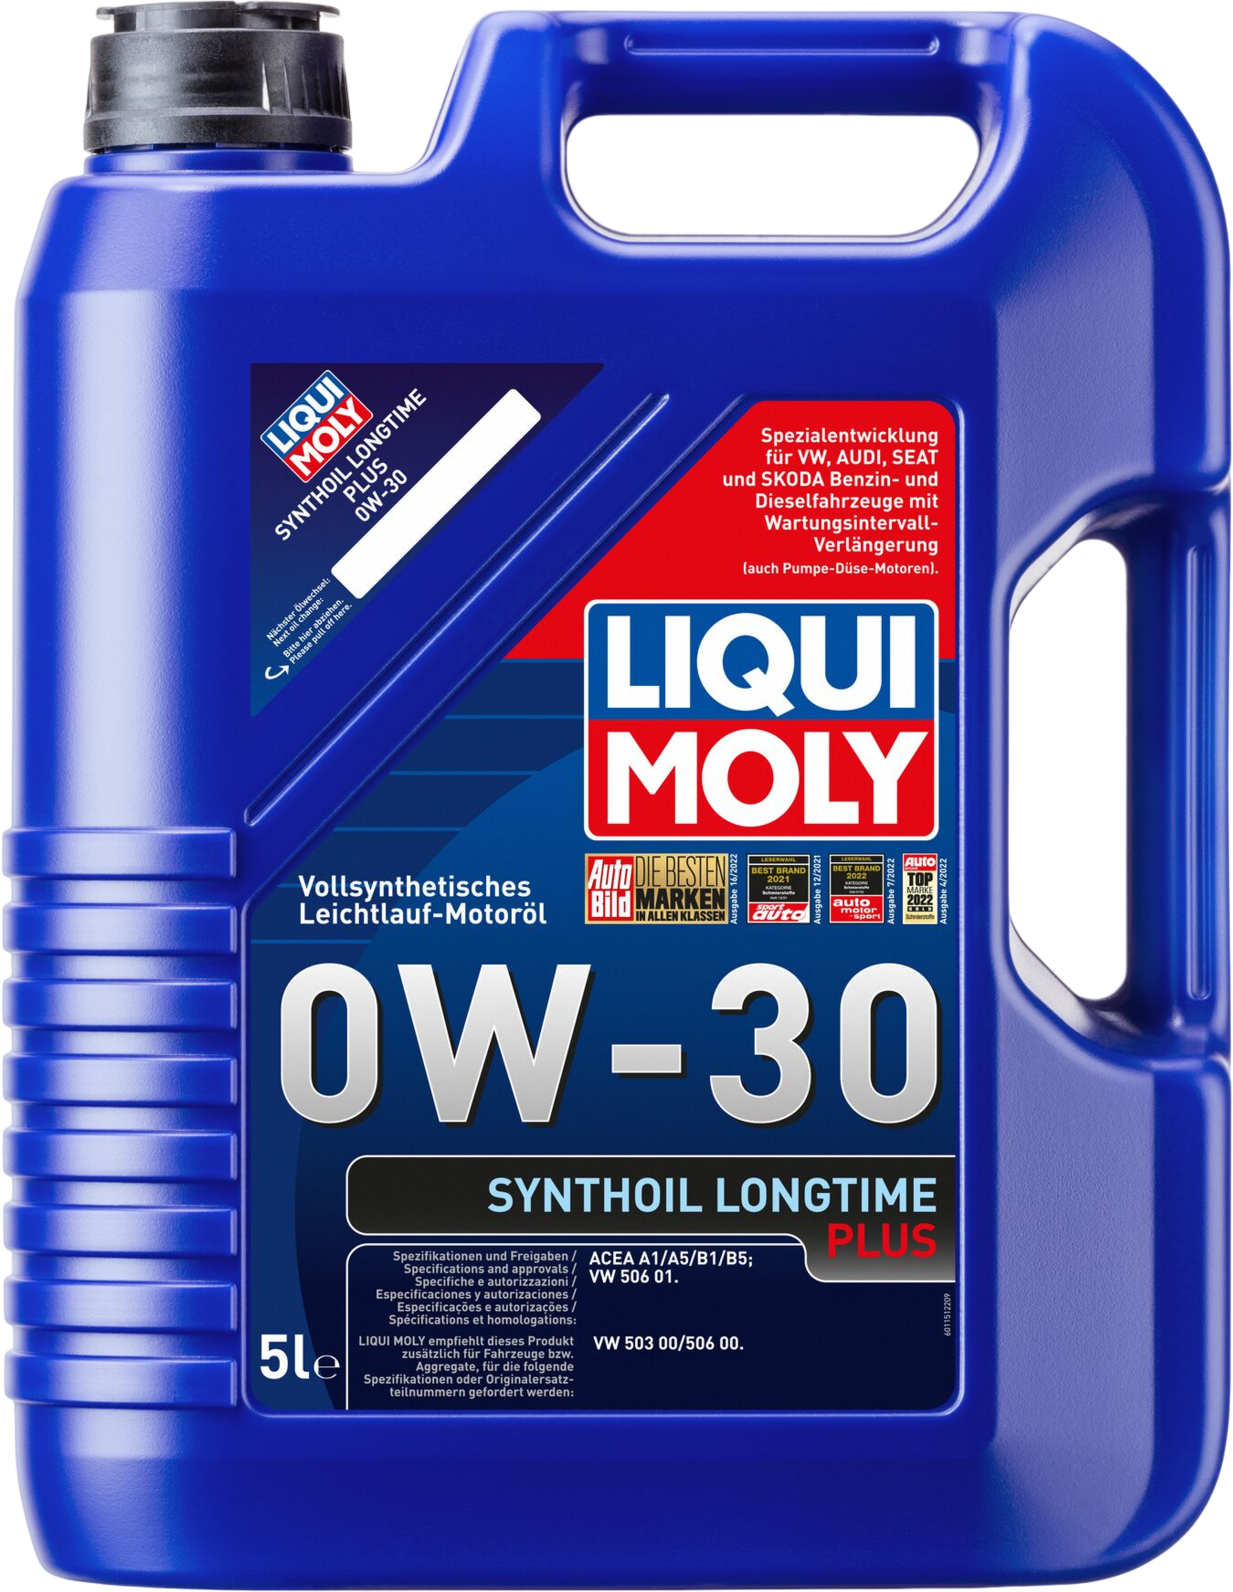 Liqui Moly Synthoil Longtime Plus 0W-30, 5 lt